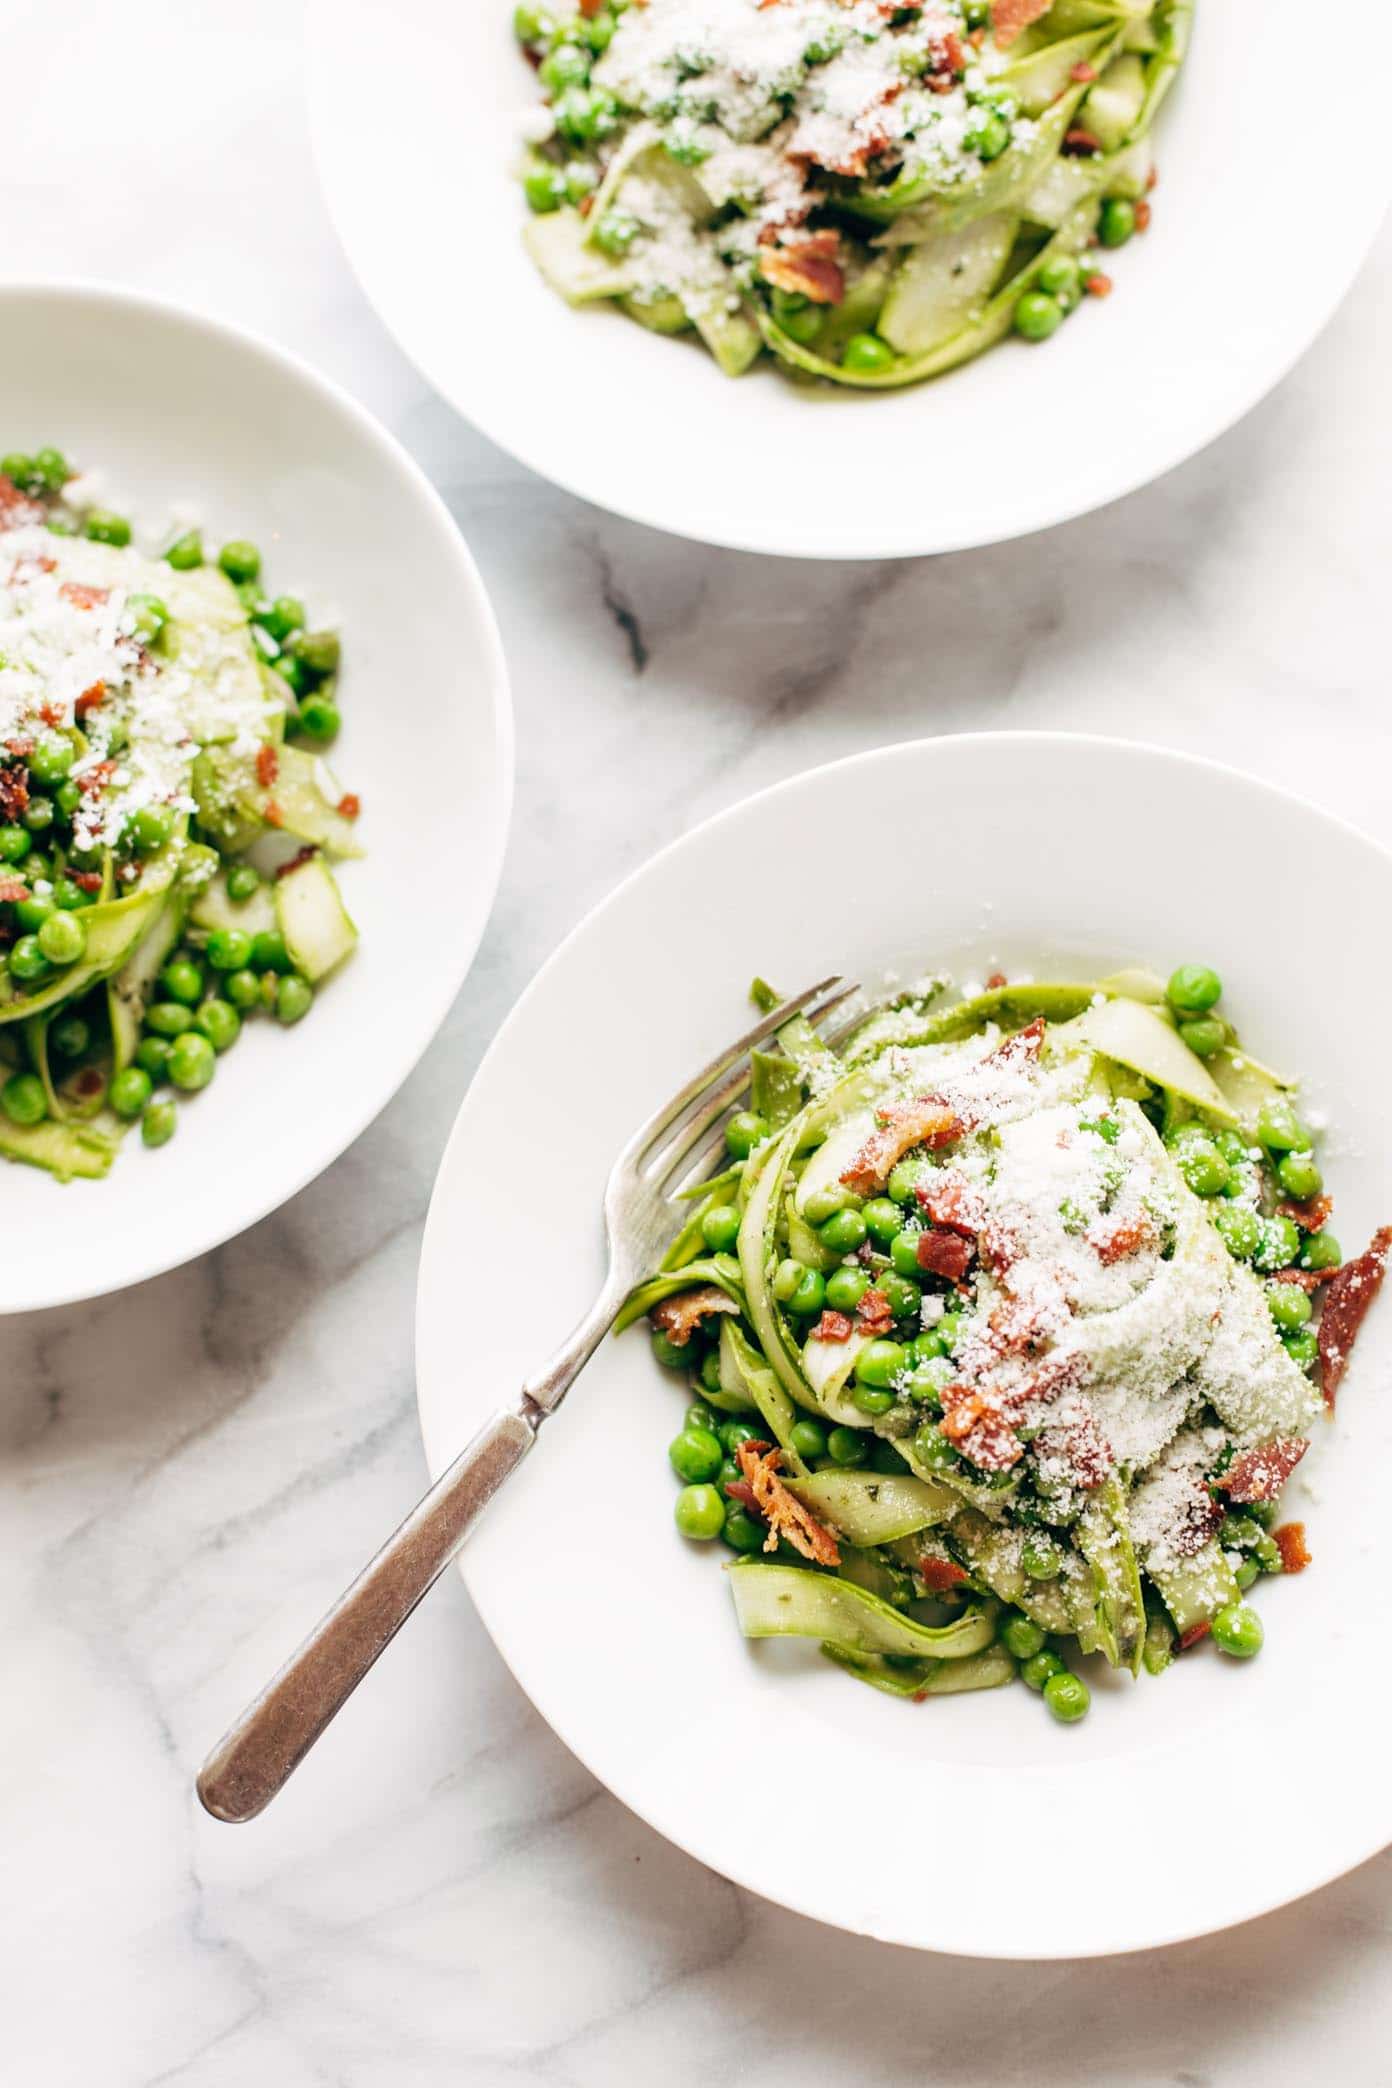 Pesto asparagus noodles recipe